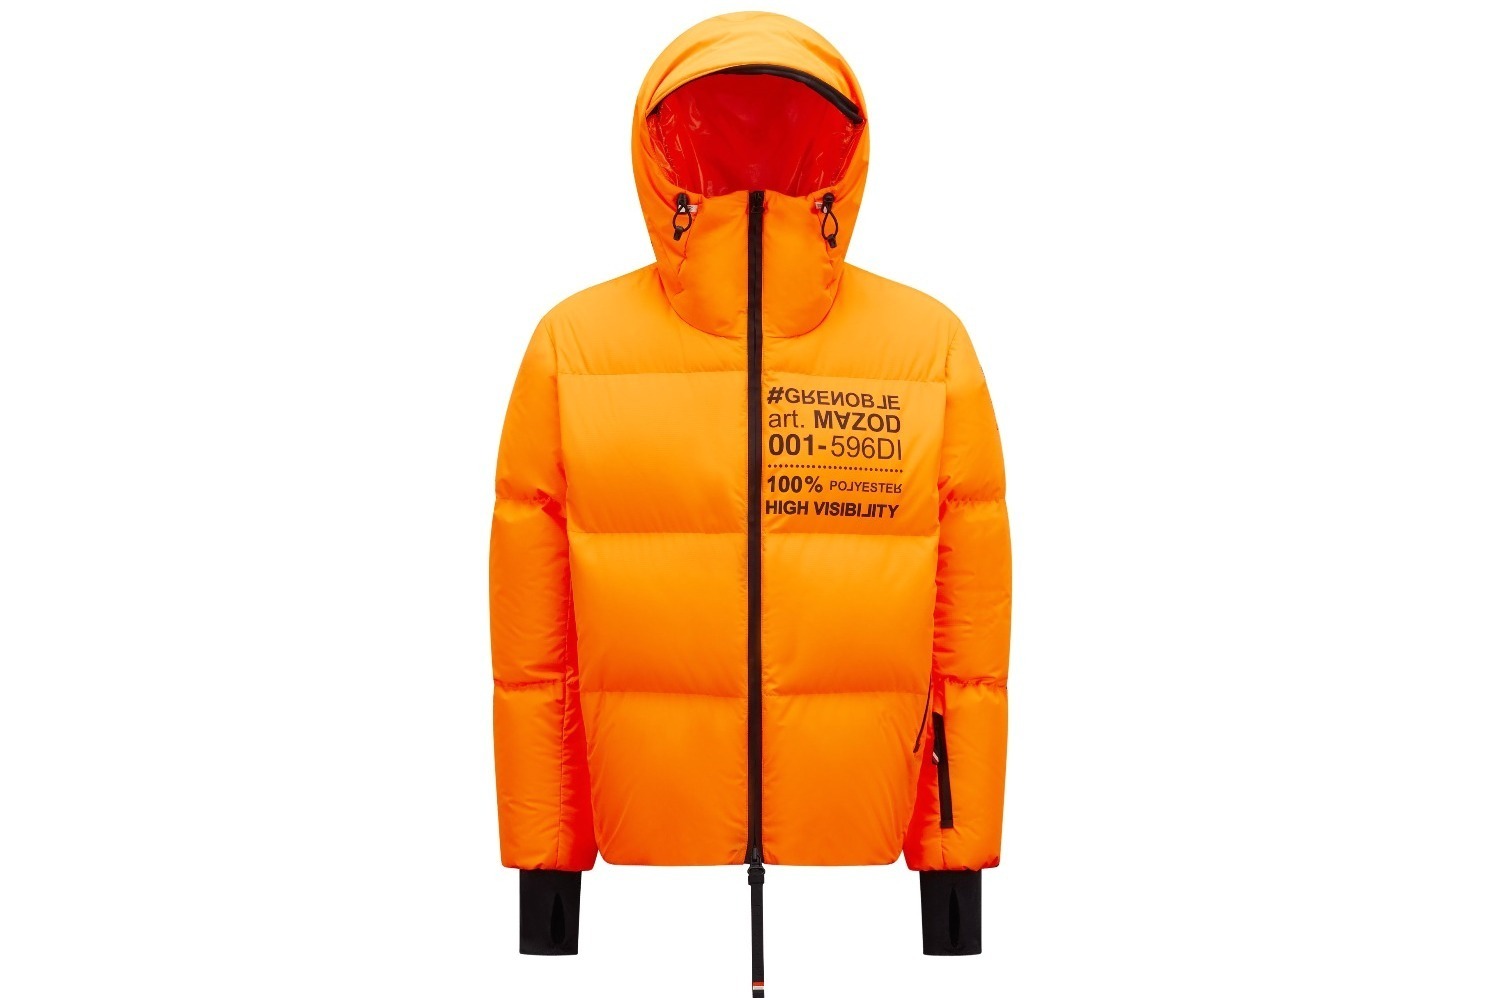 モンクレール グルノーブルの高機能スキーウェア、鮮やか“蛍光オレンジ ...